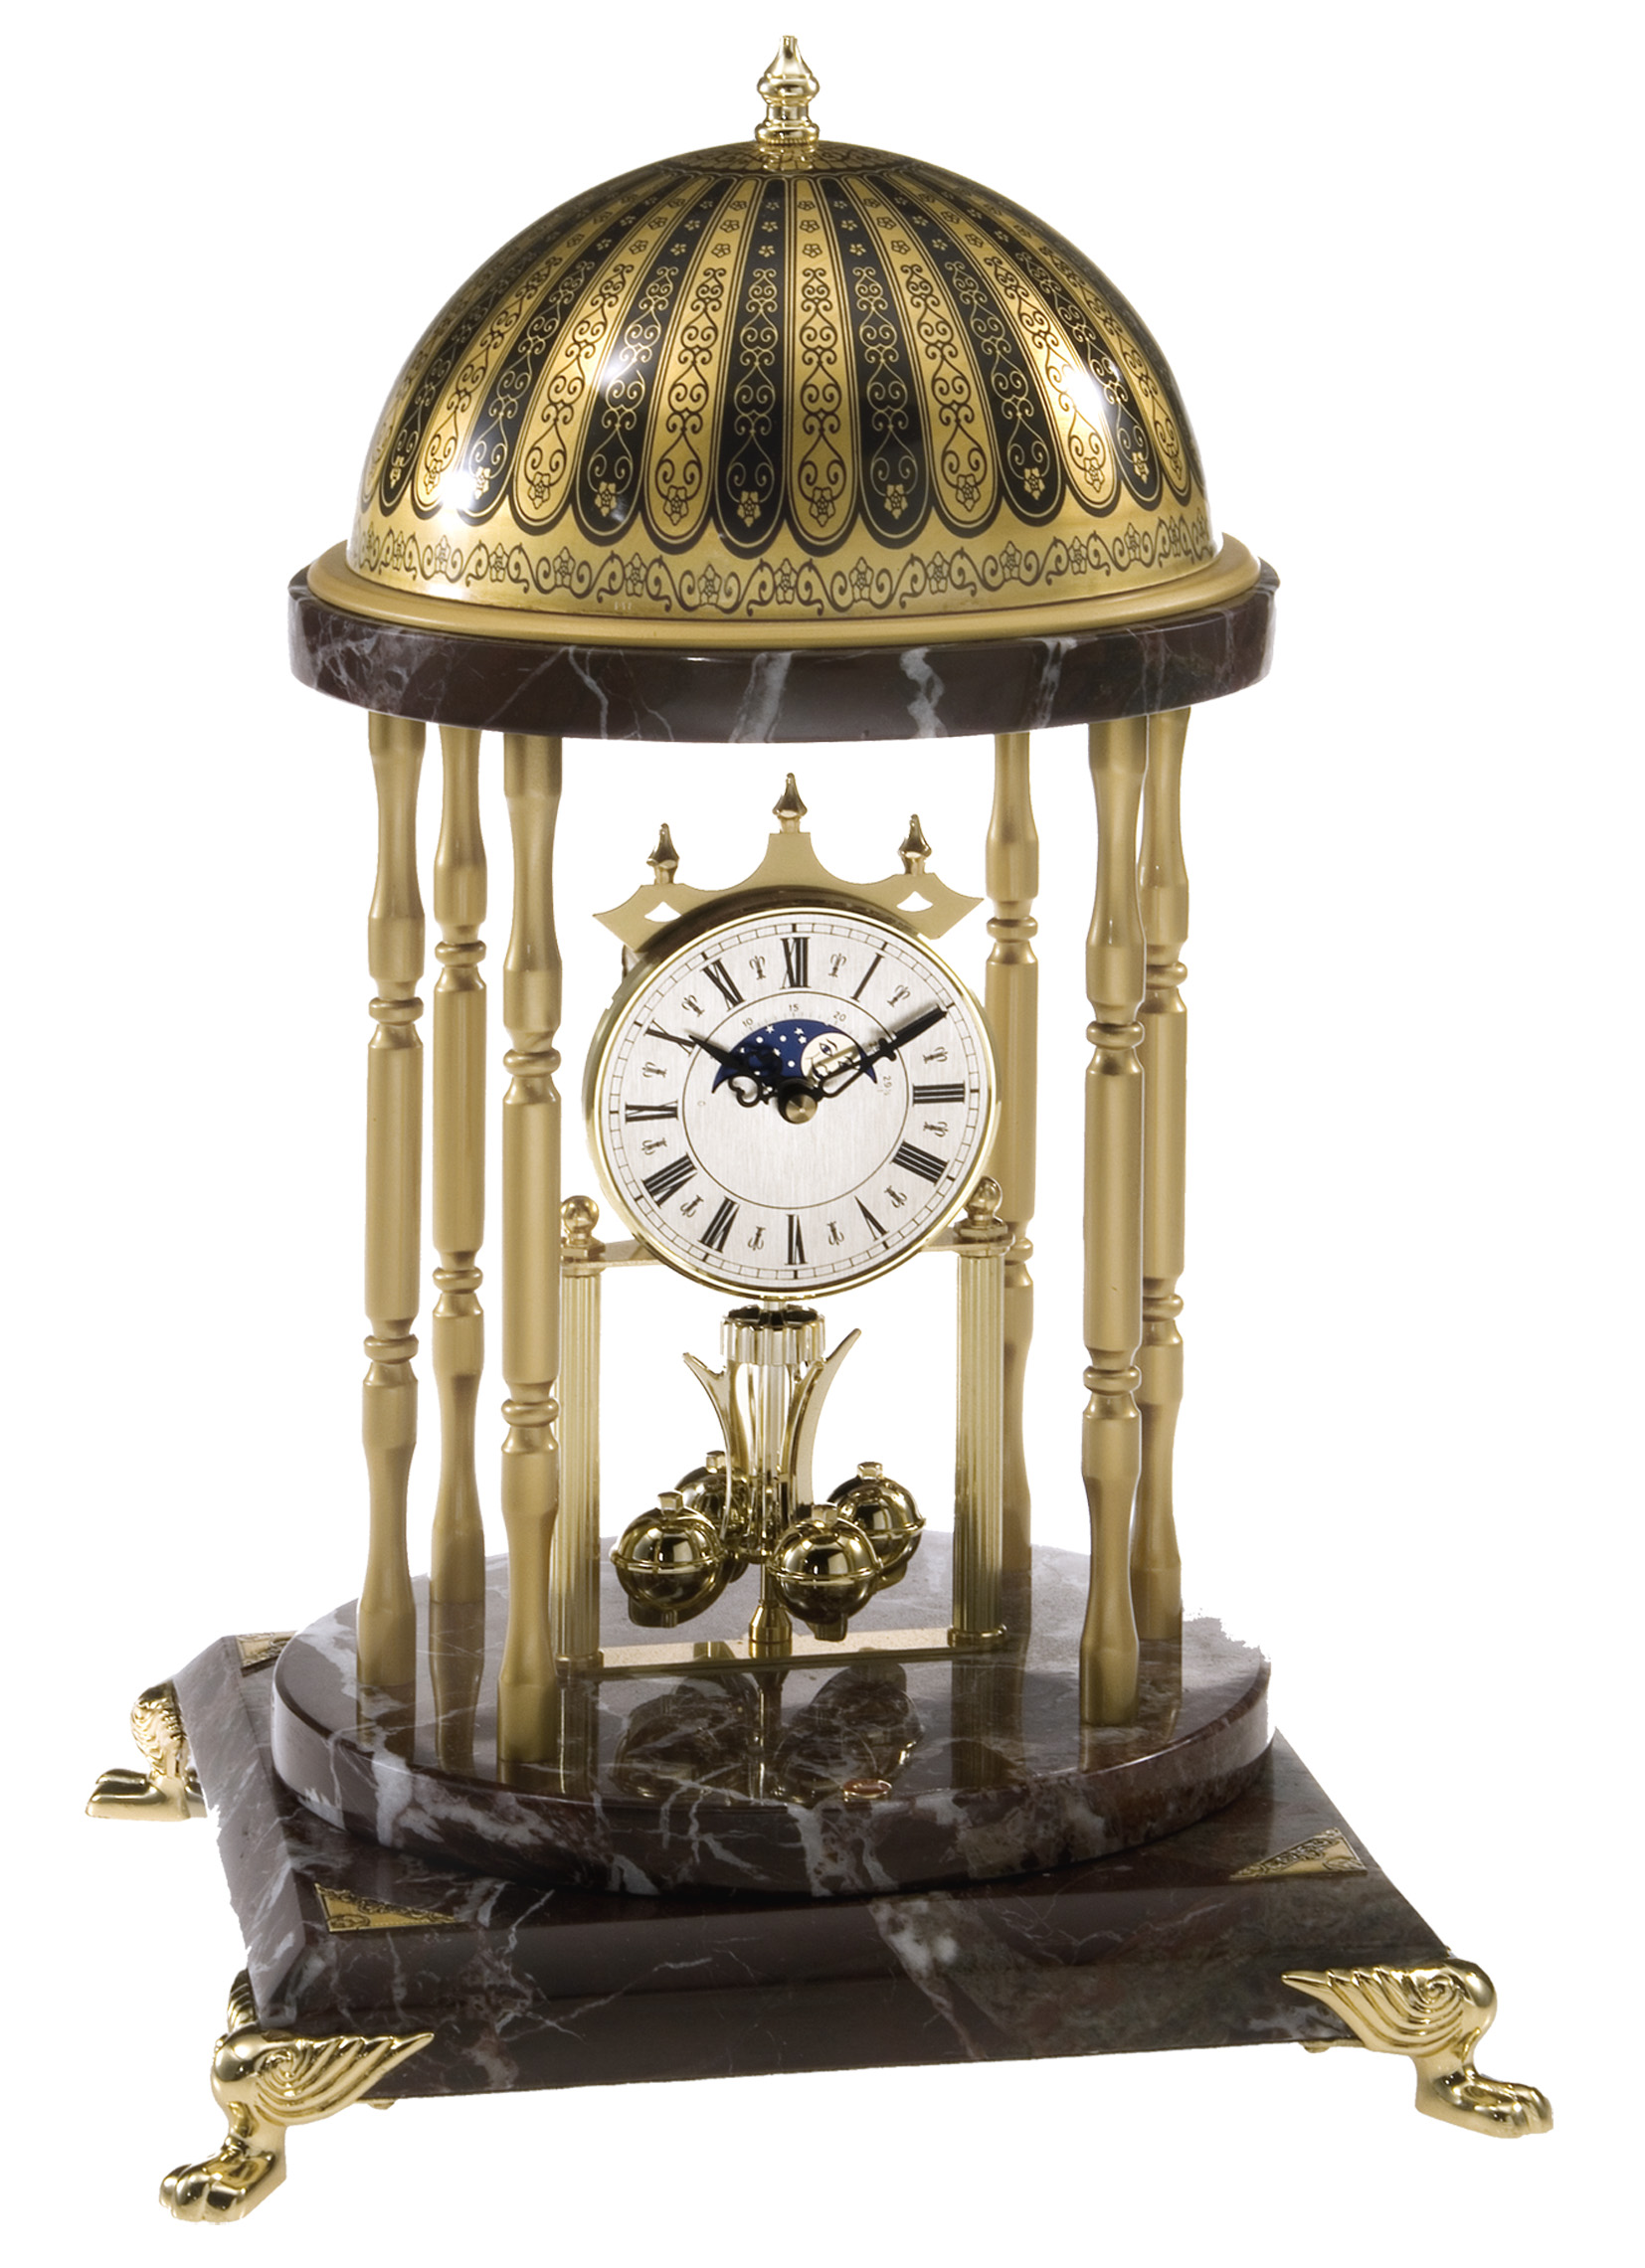 Credansa - TAJ MAHAL clock